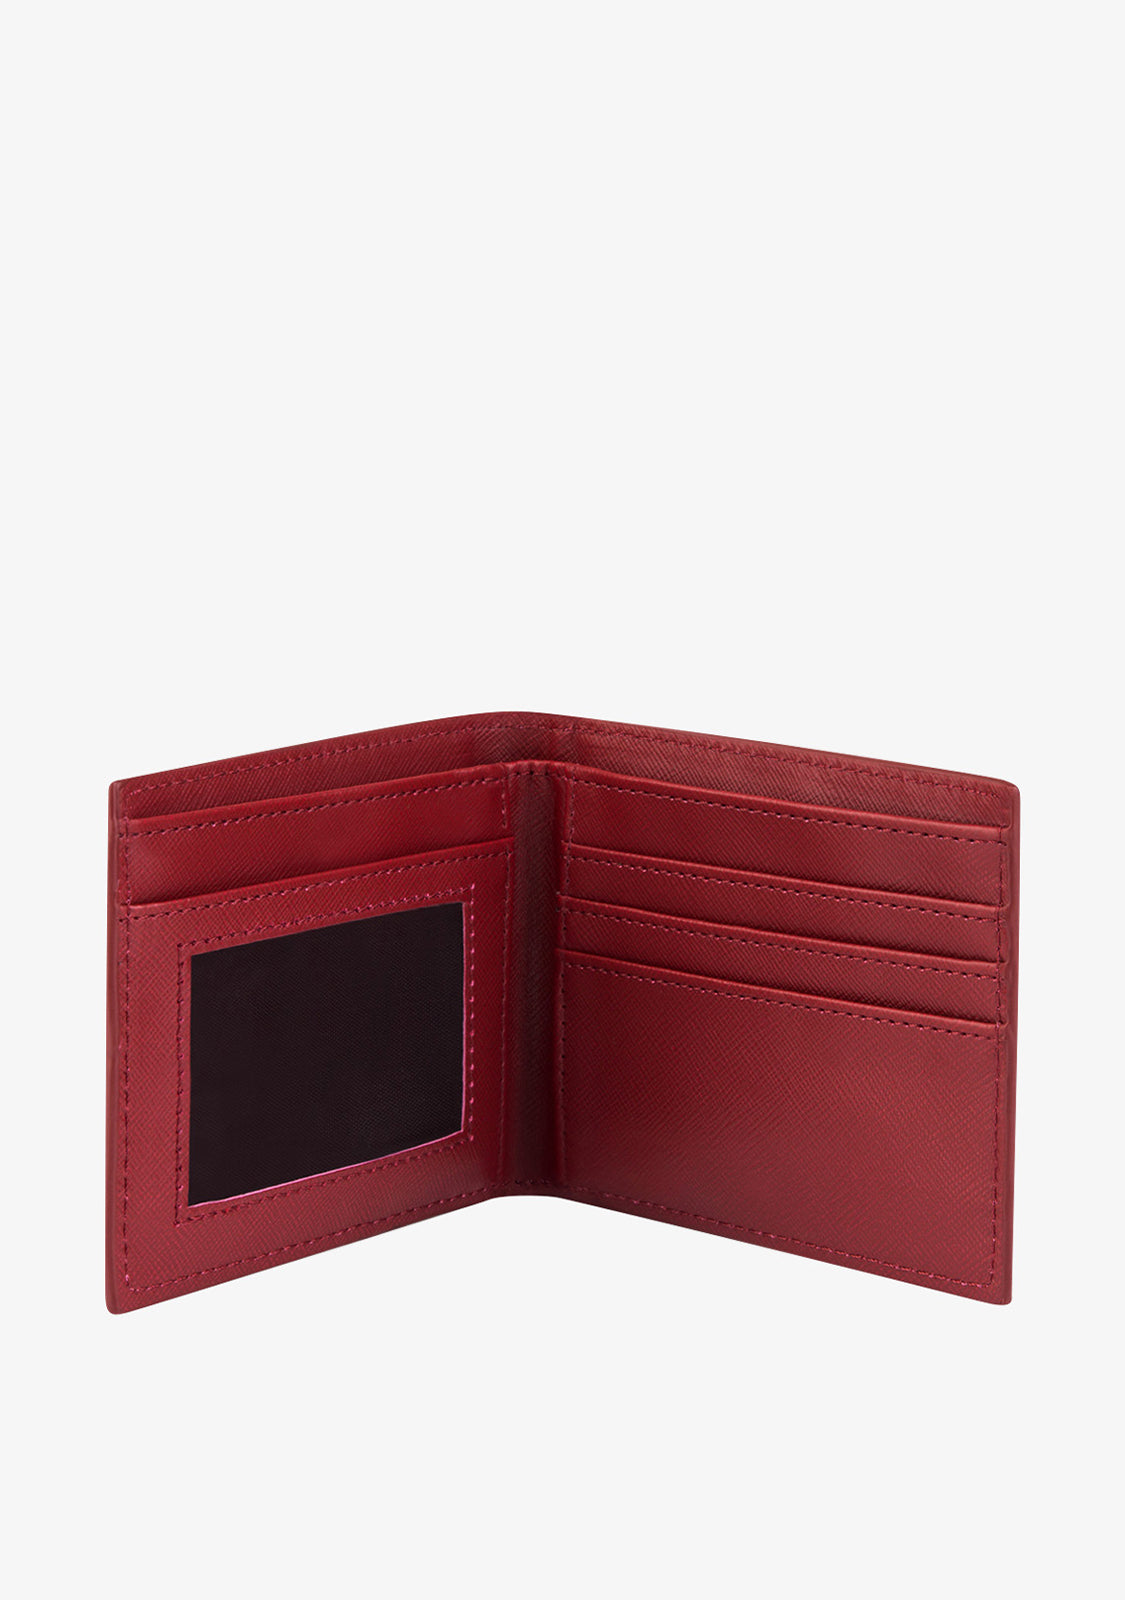 Red Billfold Wallet